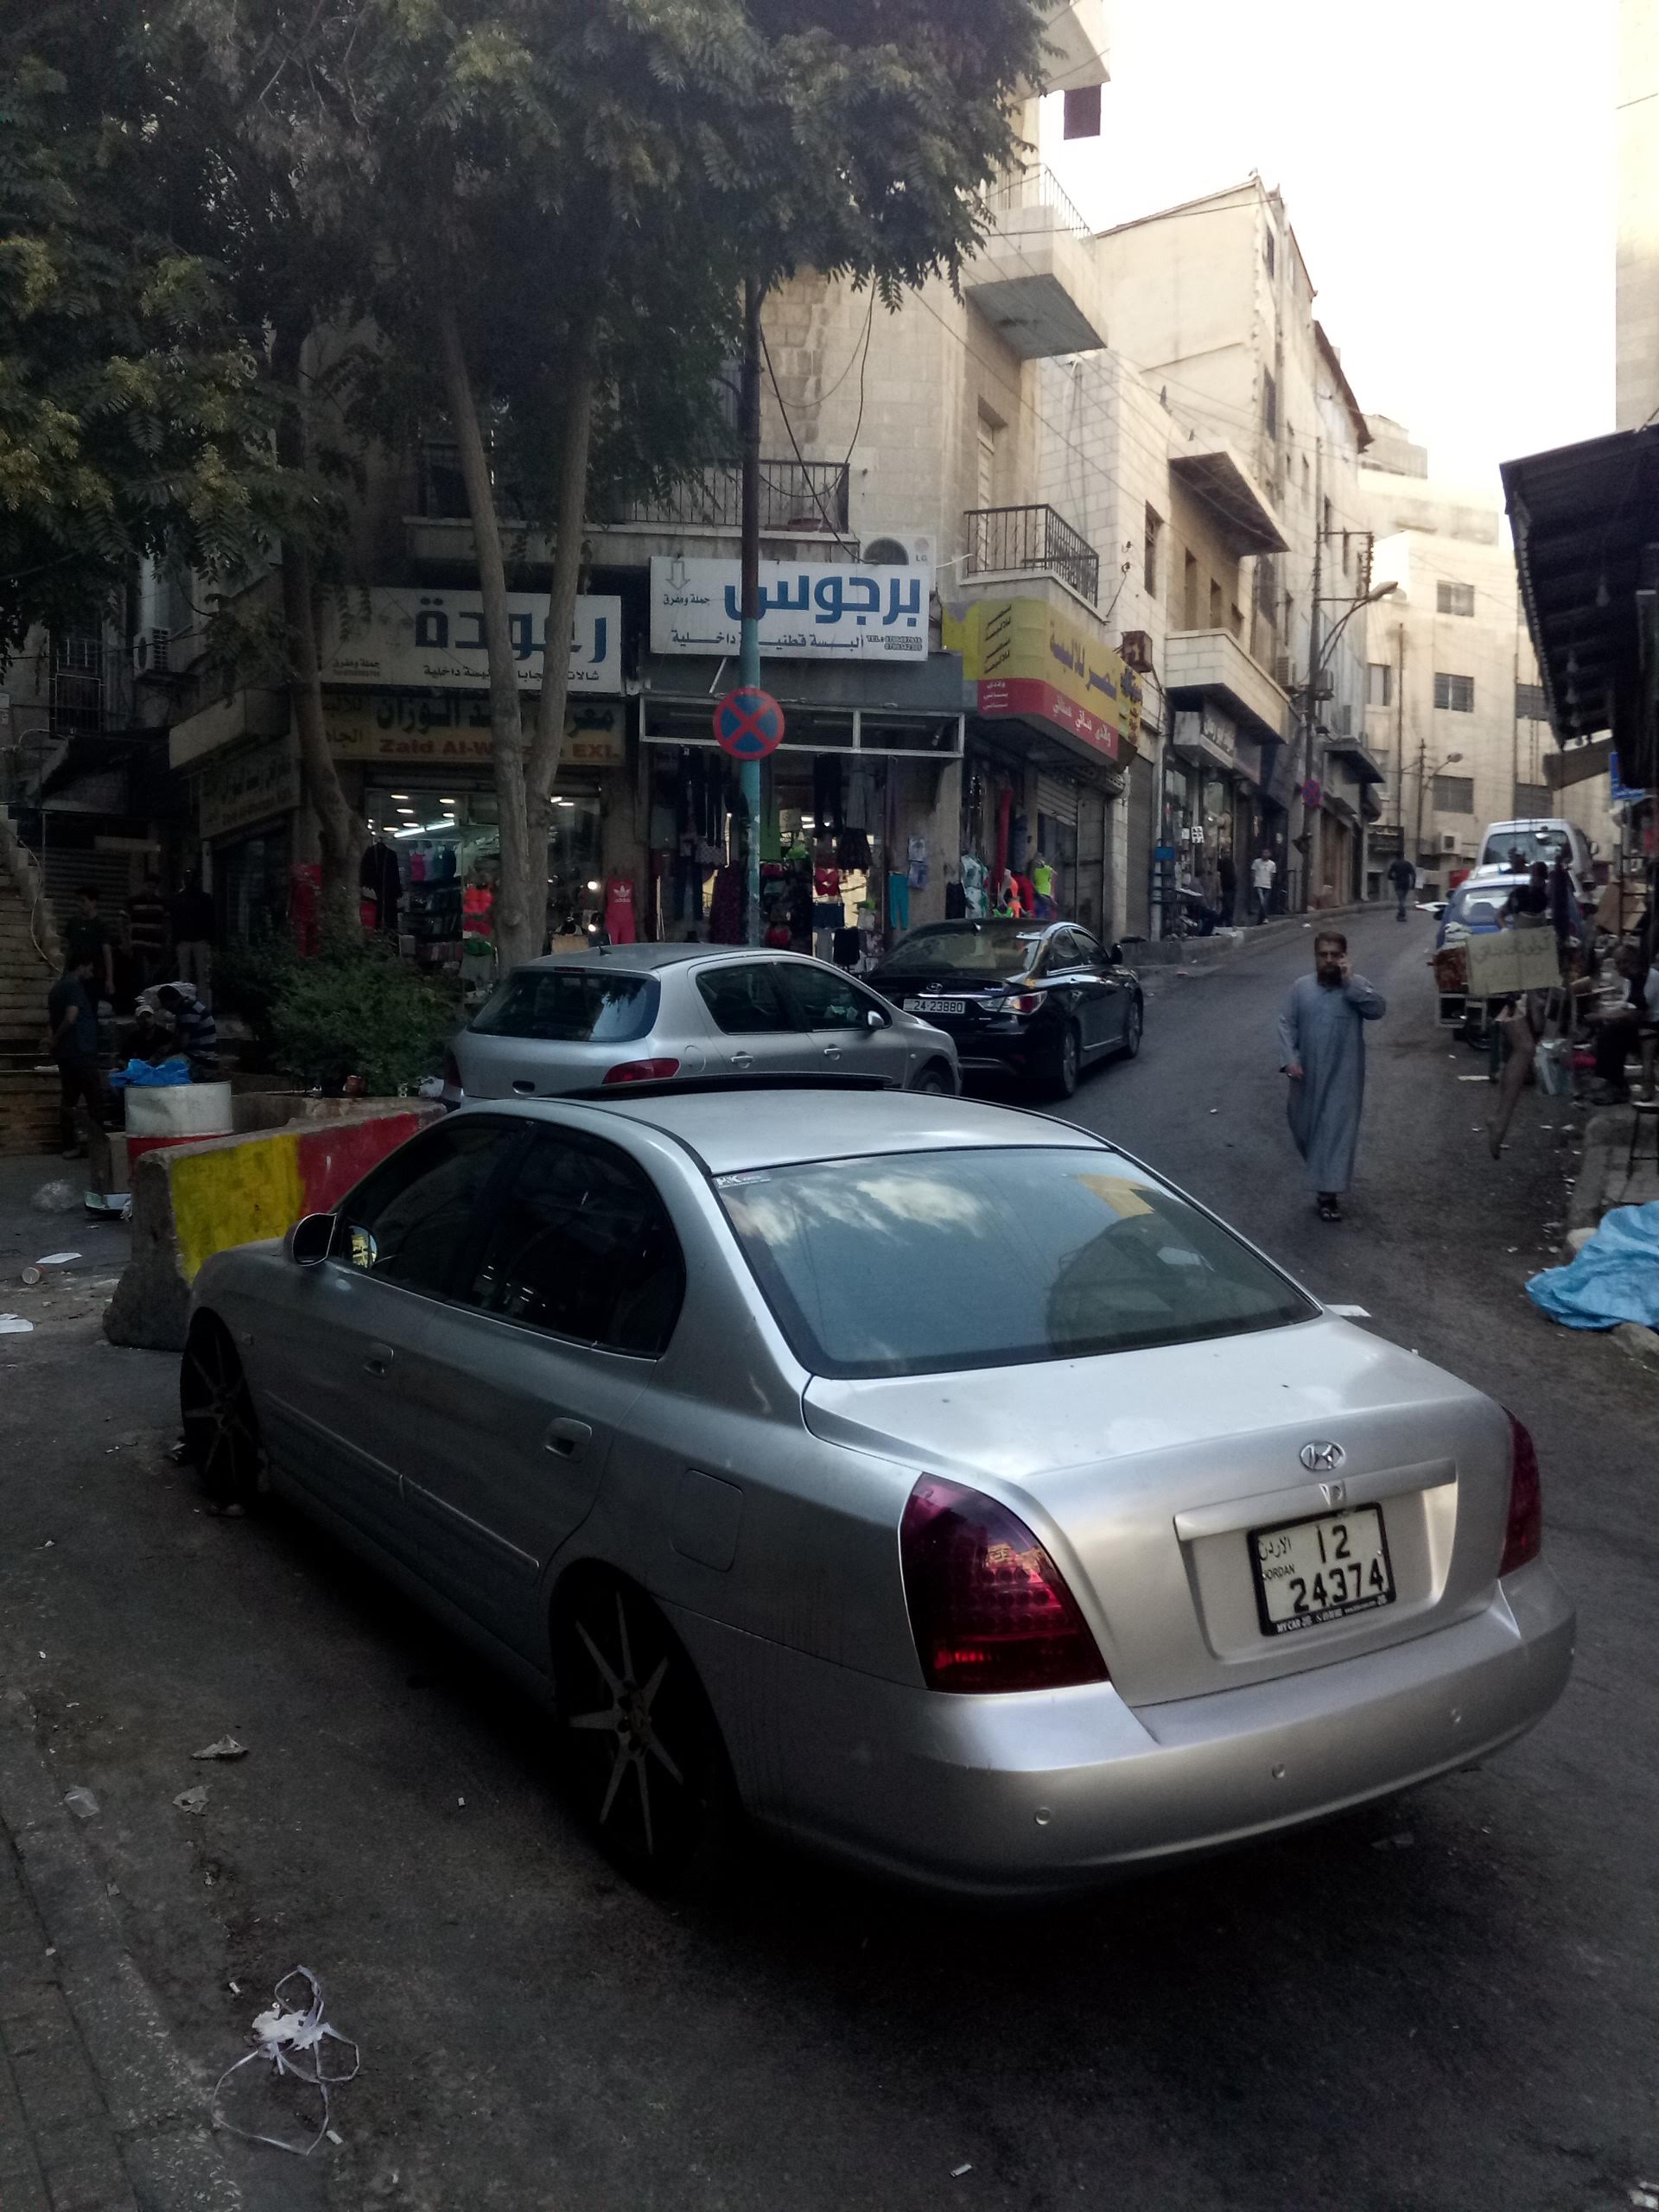 Street in Amman